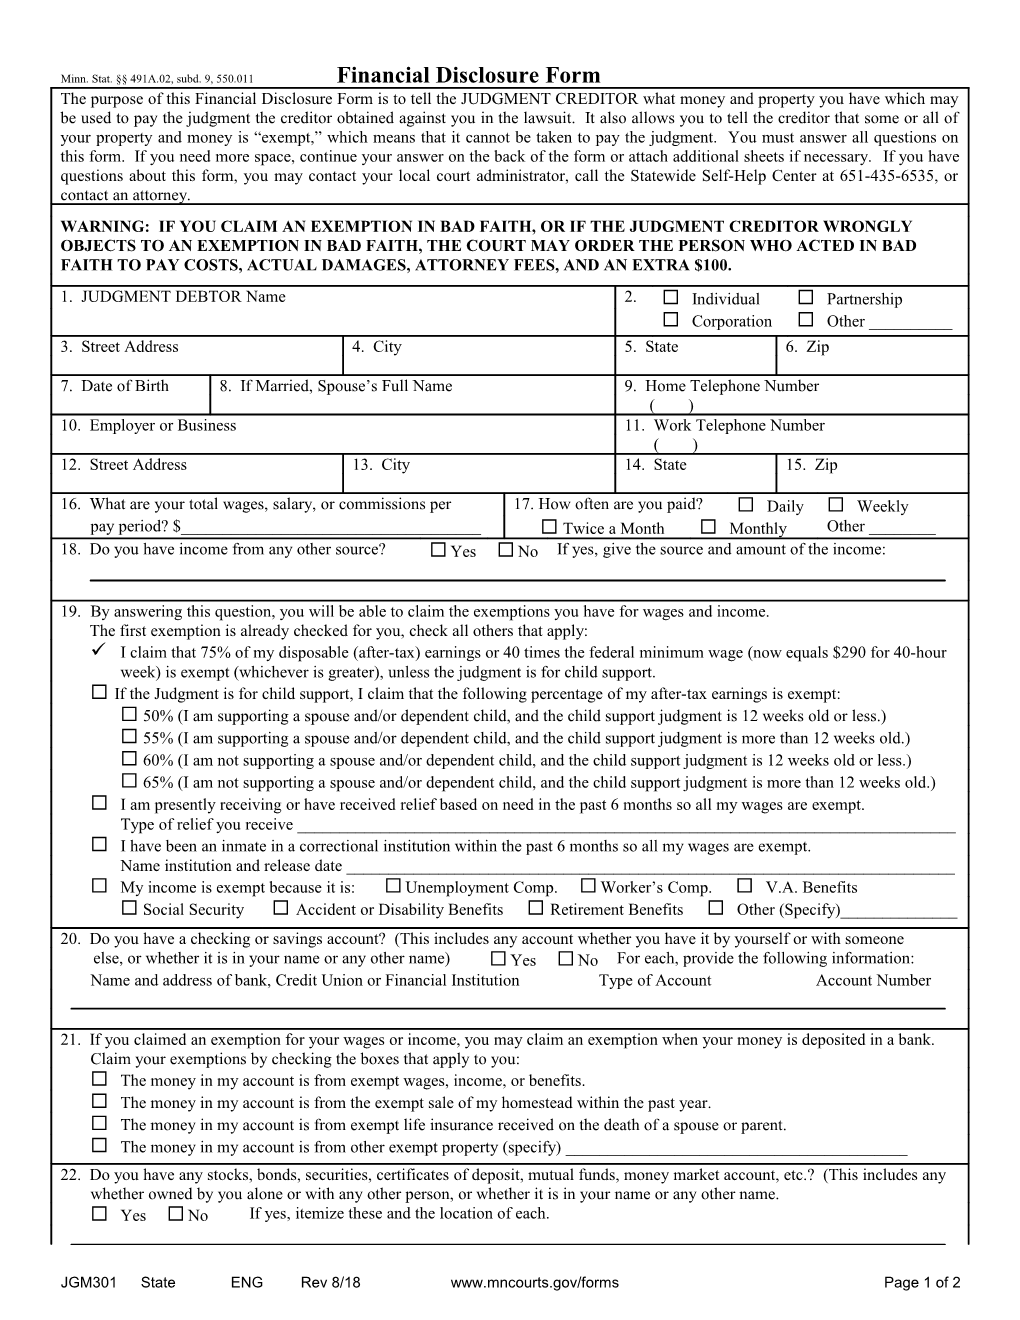 JGM301 - Financial Disclosure Form